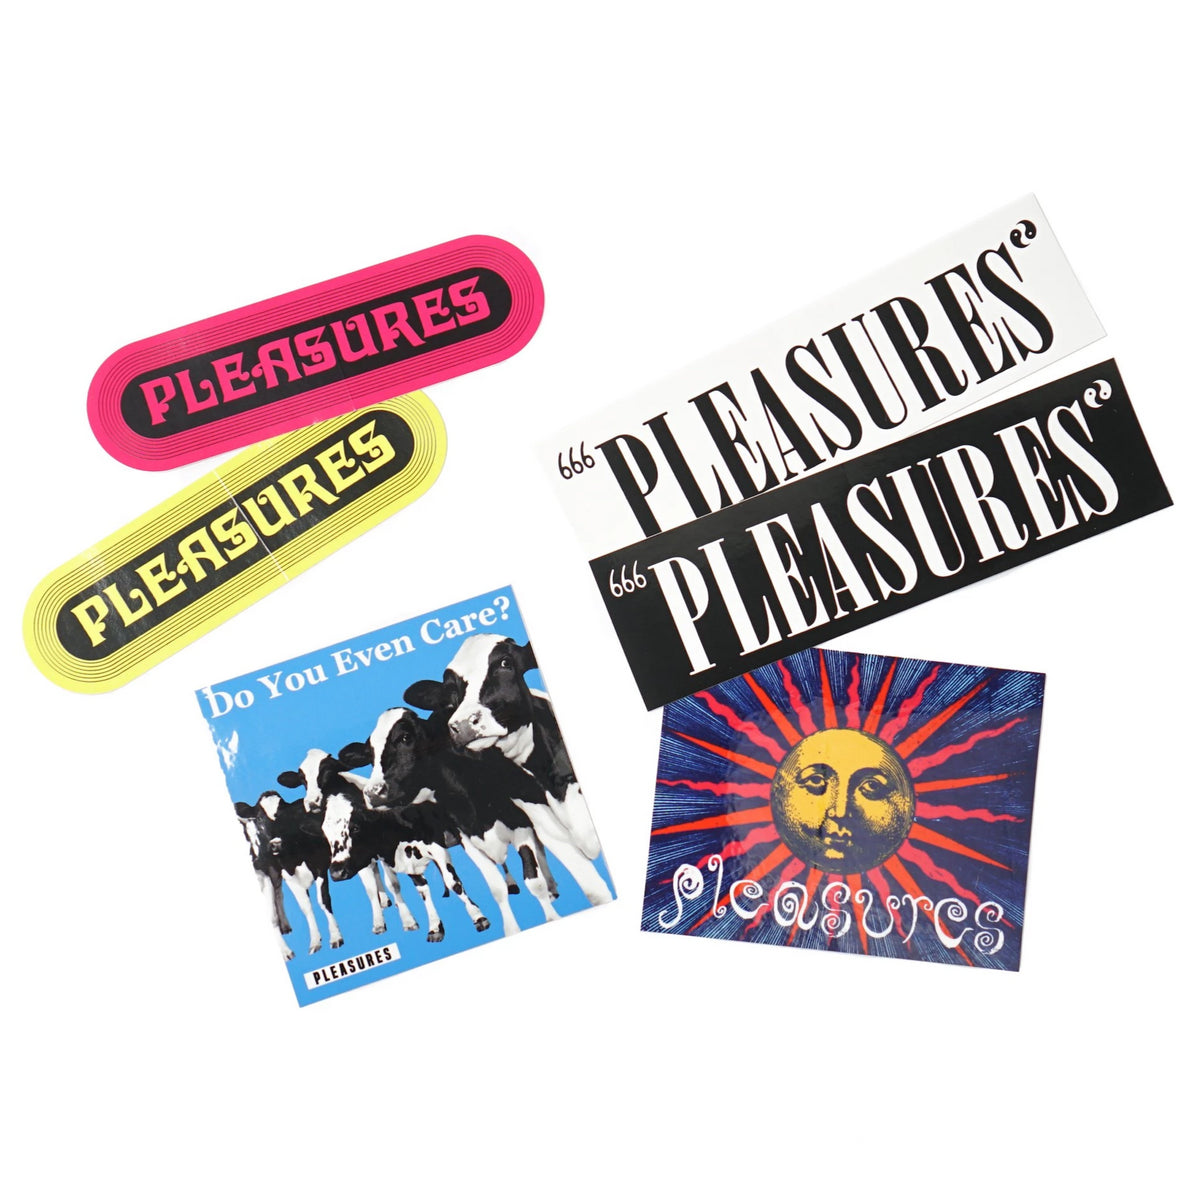 Pleasures Summer 2019 Sticker Pack (6 Stickers)